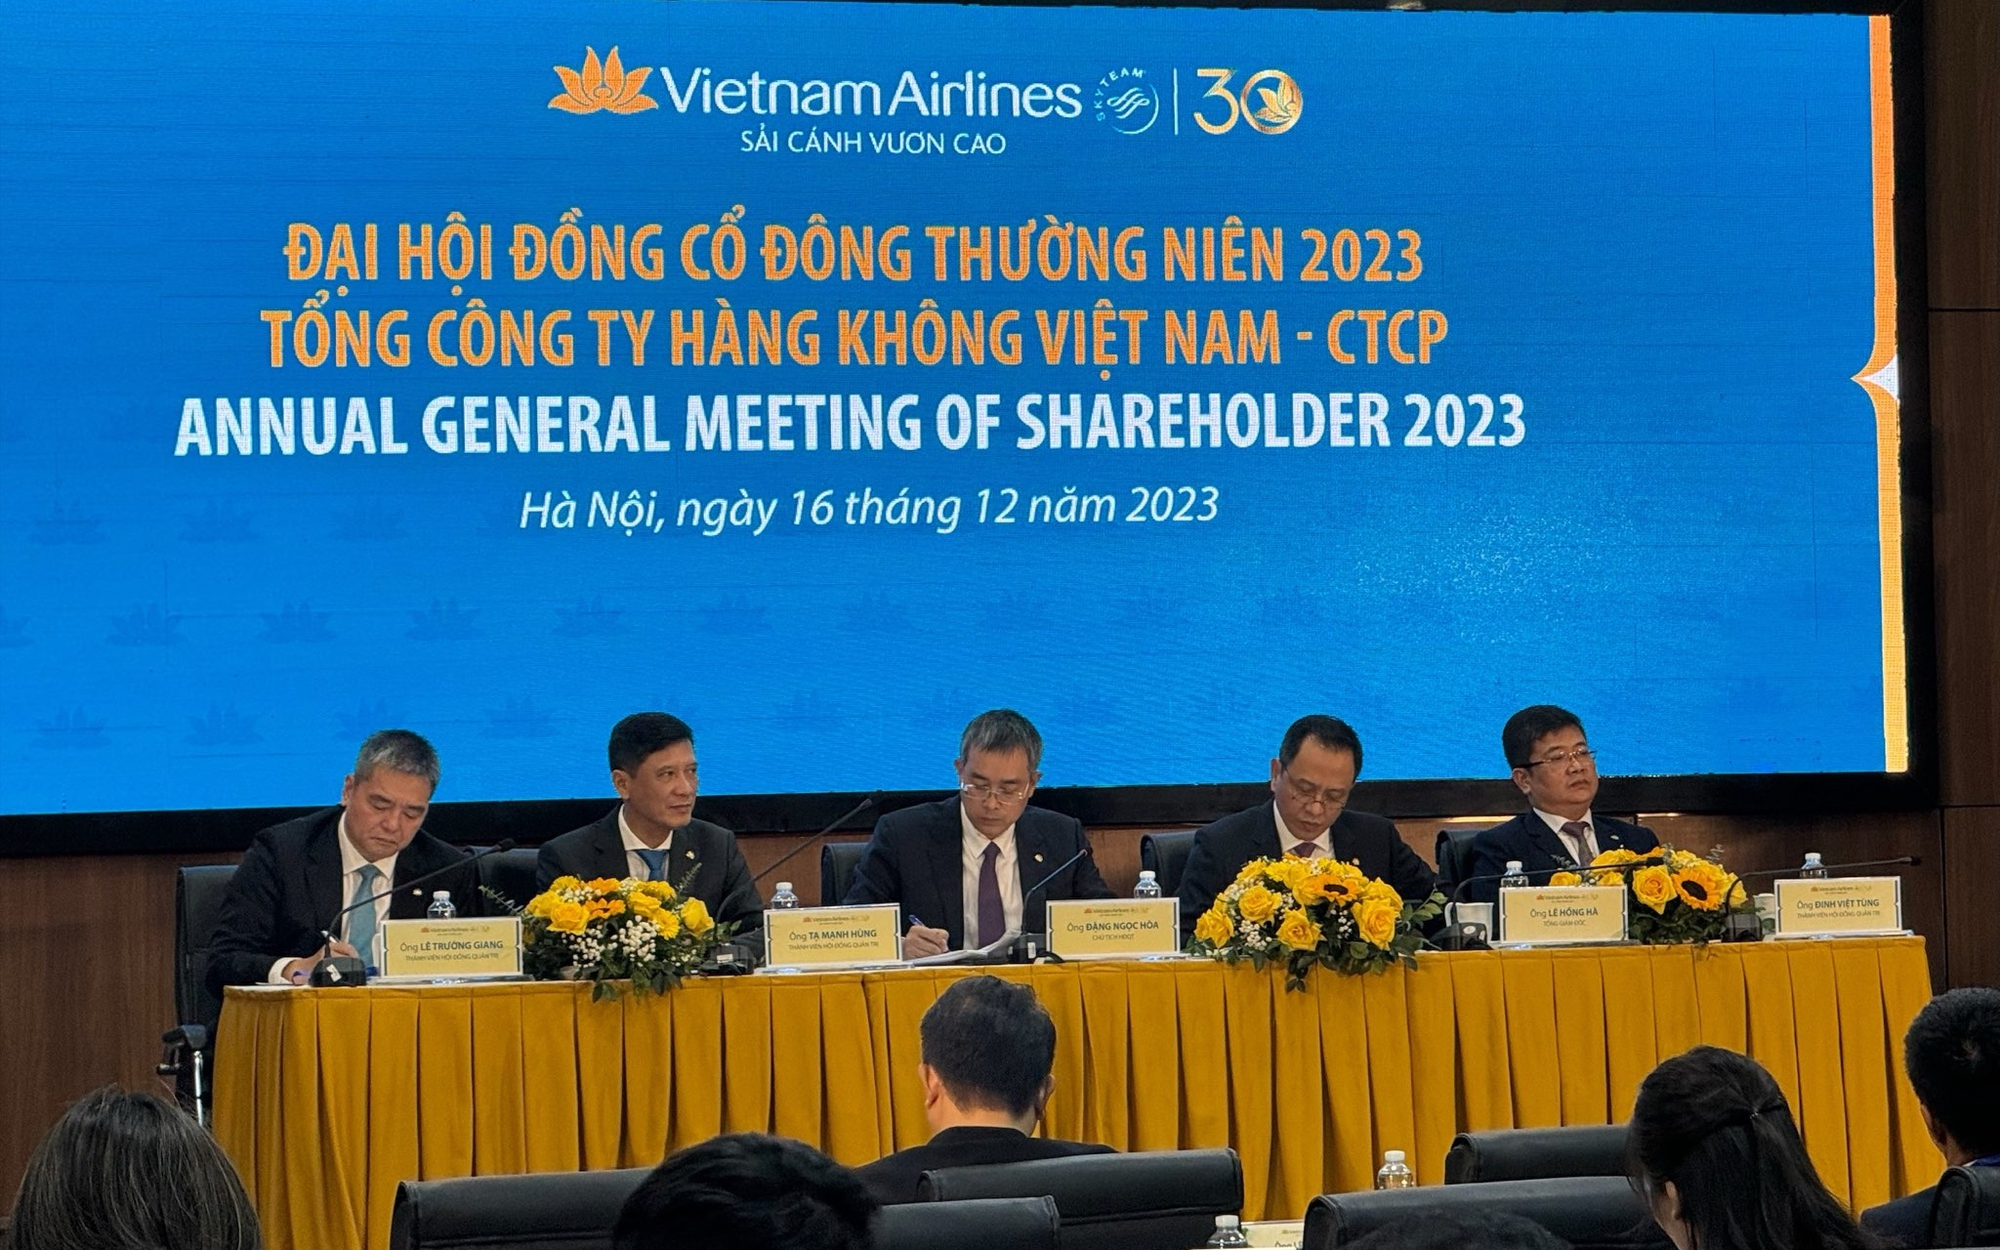 ĐHCĐ Vietnam Airlines: Mong muốn sớm được thông qua chủ trương tái cơ cấu gồm thoái vốn Skypec, phát hành thêm cổ phiếu